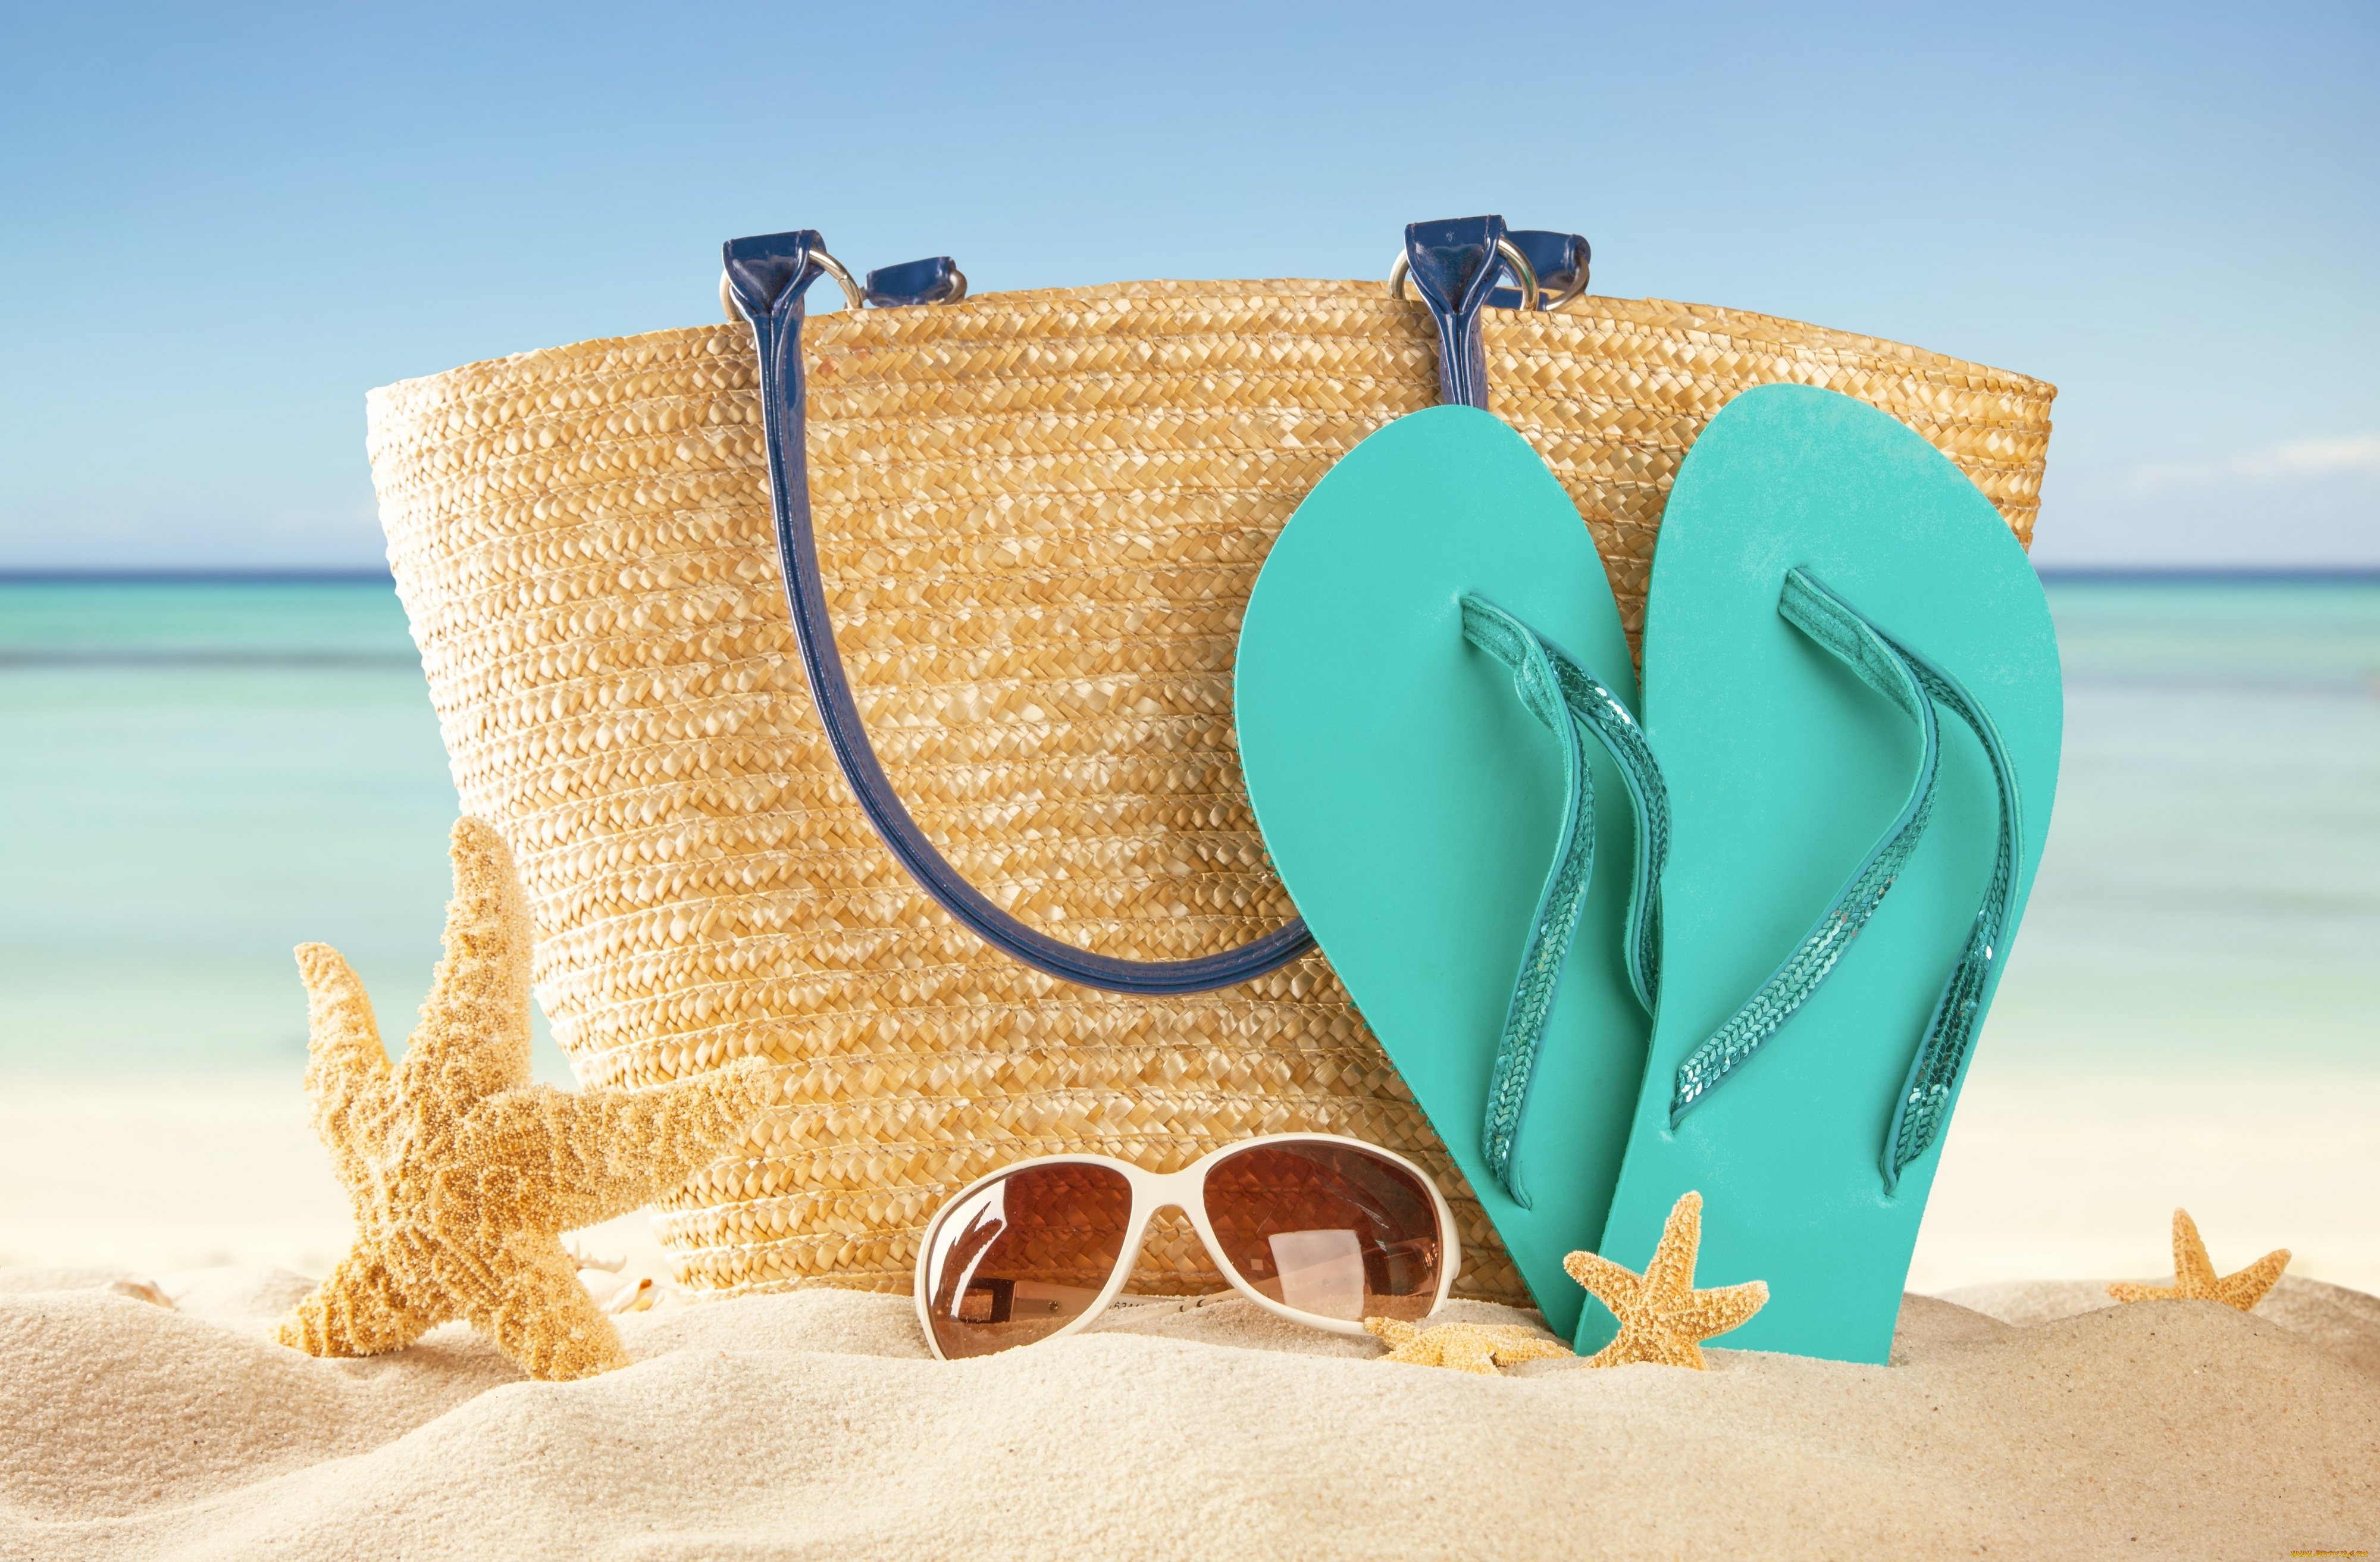 разное, сумки, , кошельки, , зонты, сланцы, сумка, песок, отдых, пляж, солнце, море, лето, очки, каникулы, starfish, sea, sun, vacation, beach, accessories, summer